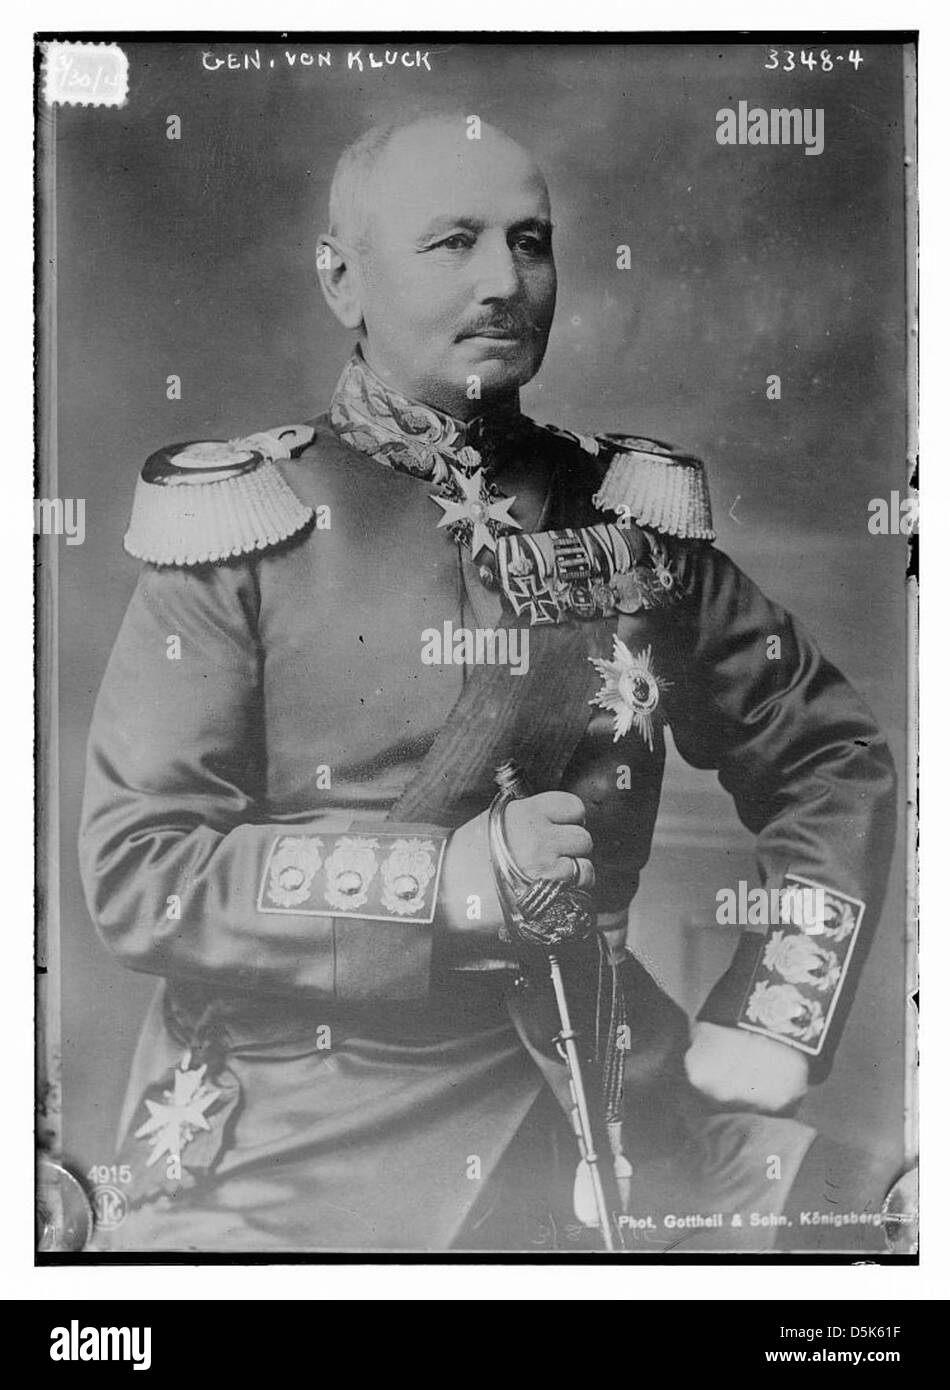 Gen. von Kluck (LOC) Stock Photo